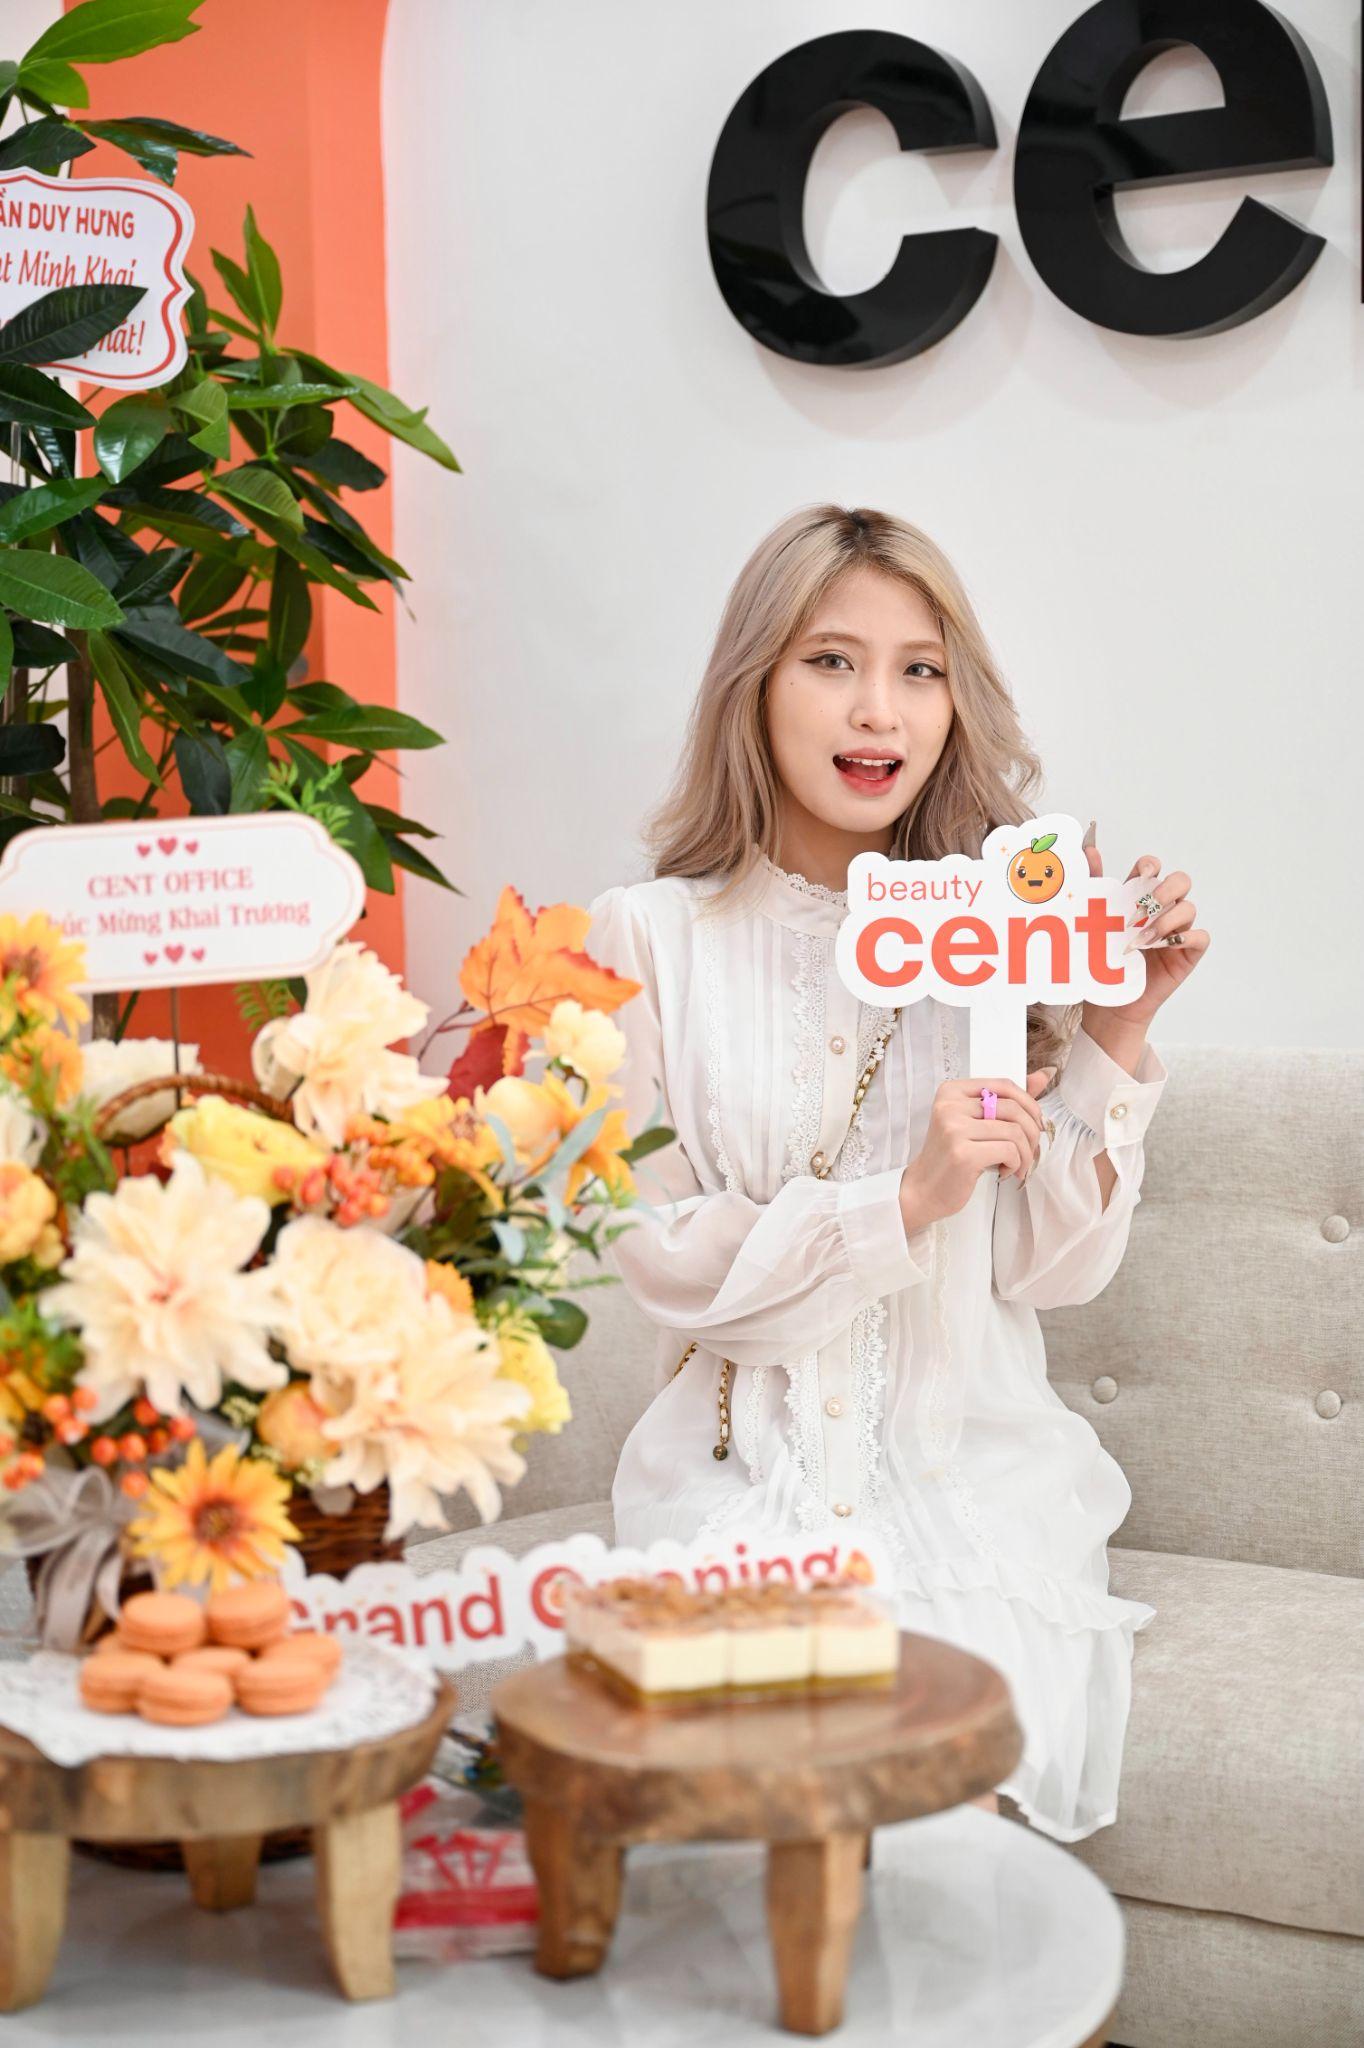 Cent Beauty khai trương cơ sở 5: Sự kiện mở đầu của kế hoạch tăng tốc mở rộng - ảnh 3